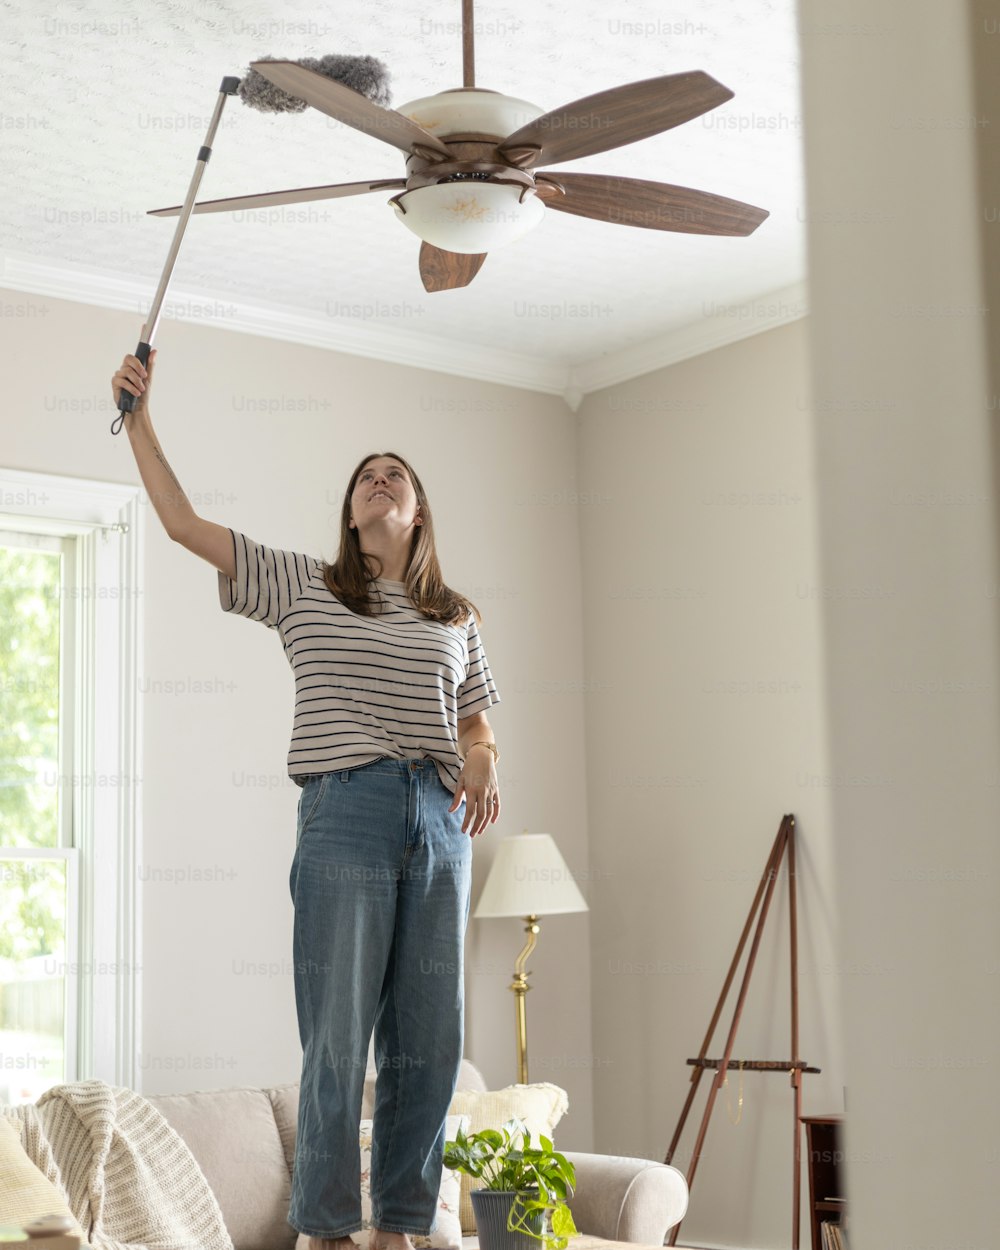 Una mujer parada en una sala de estar sosteniendo un ventilador de techo